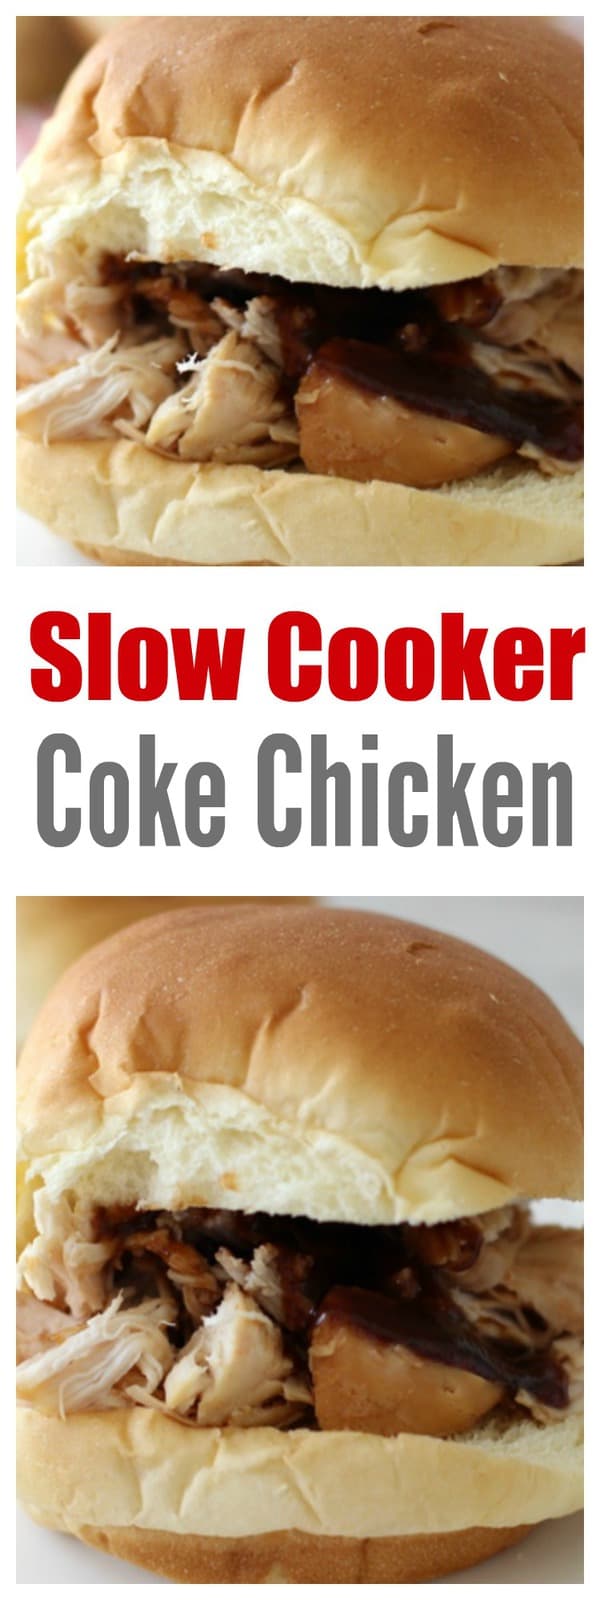 Slow Cooker Coke Chicken